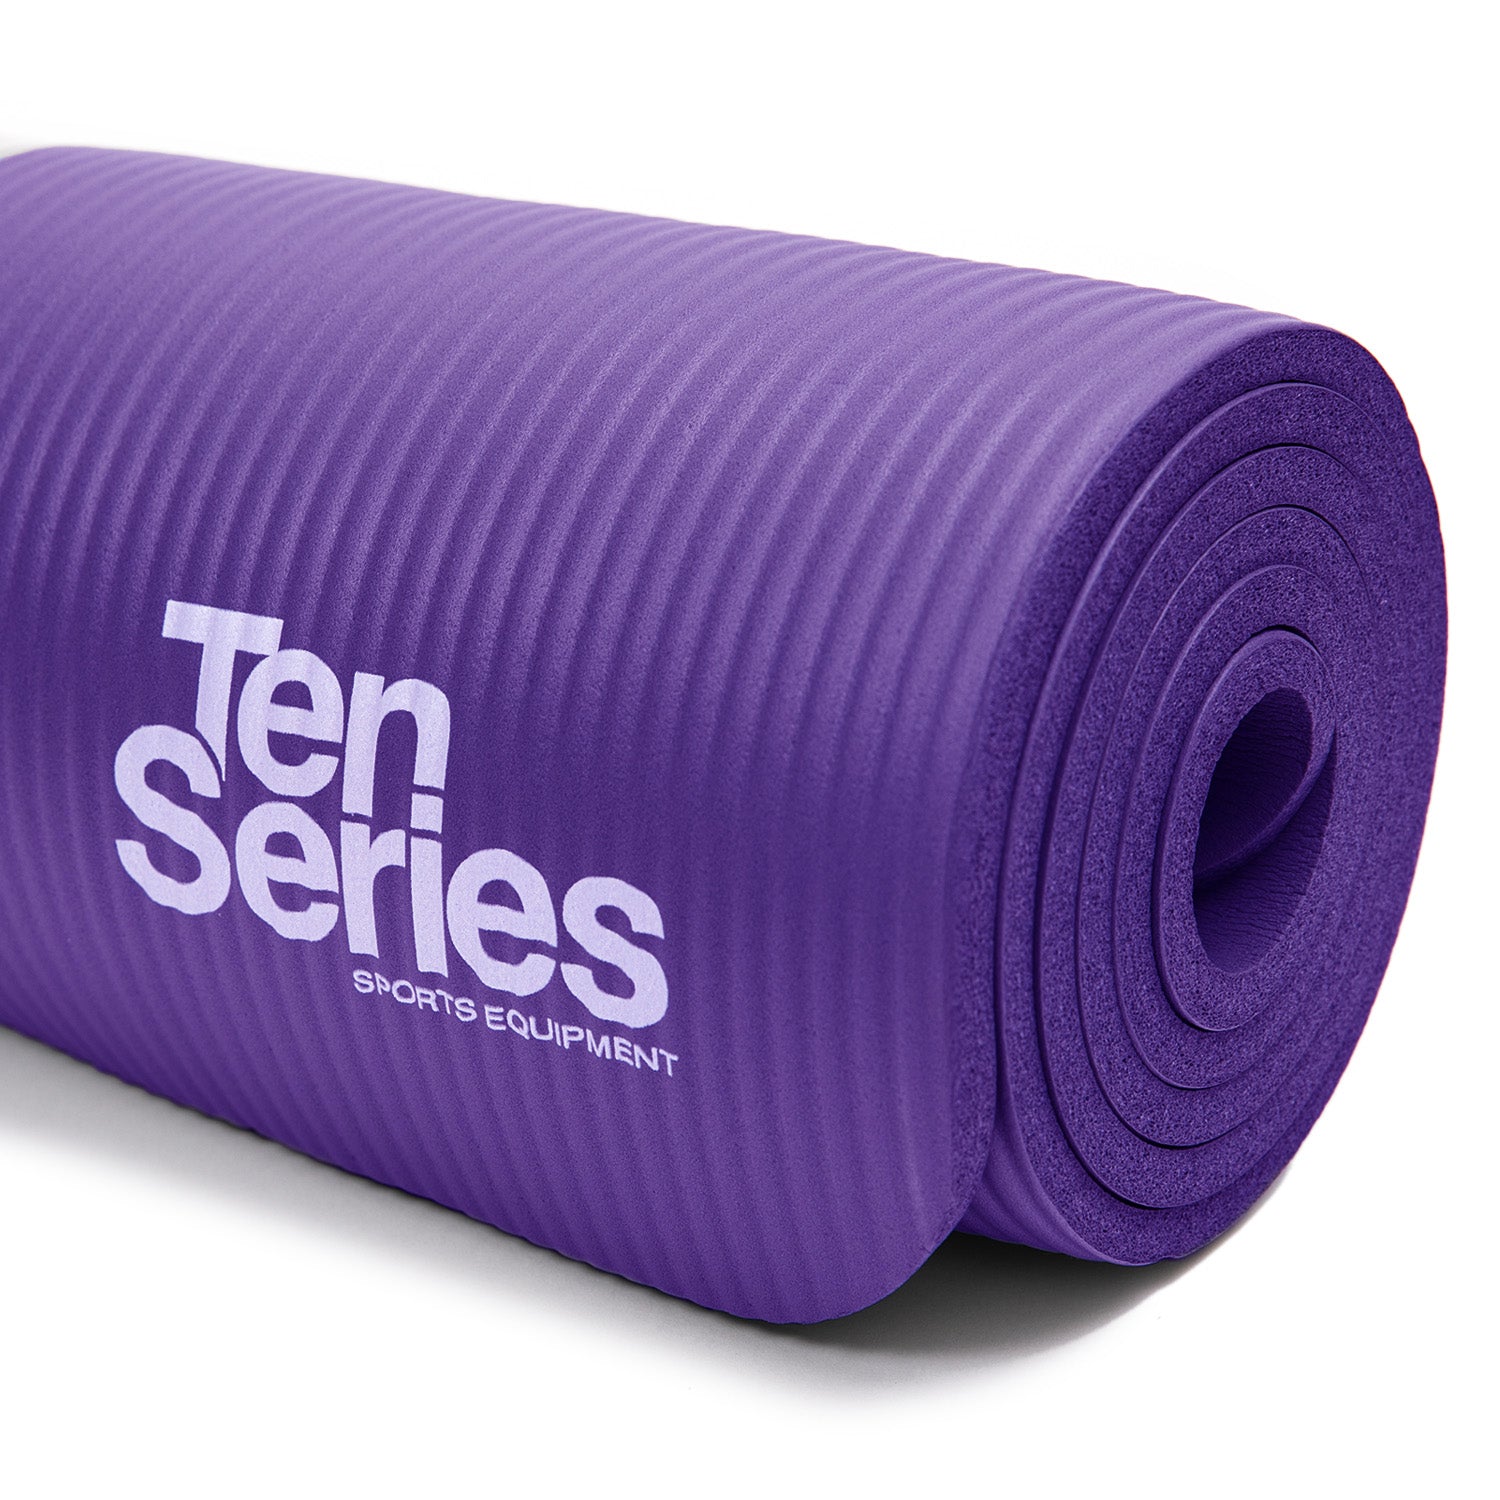 Mat De Yoga. Colchoneta de Entrenamiento Morado – Ten Series